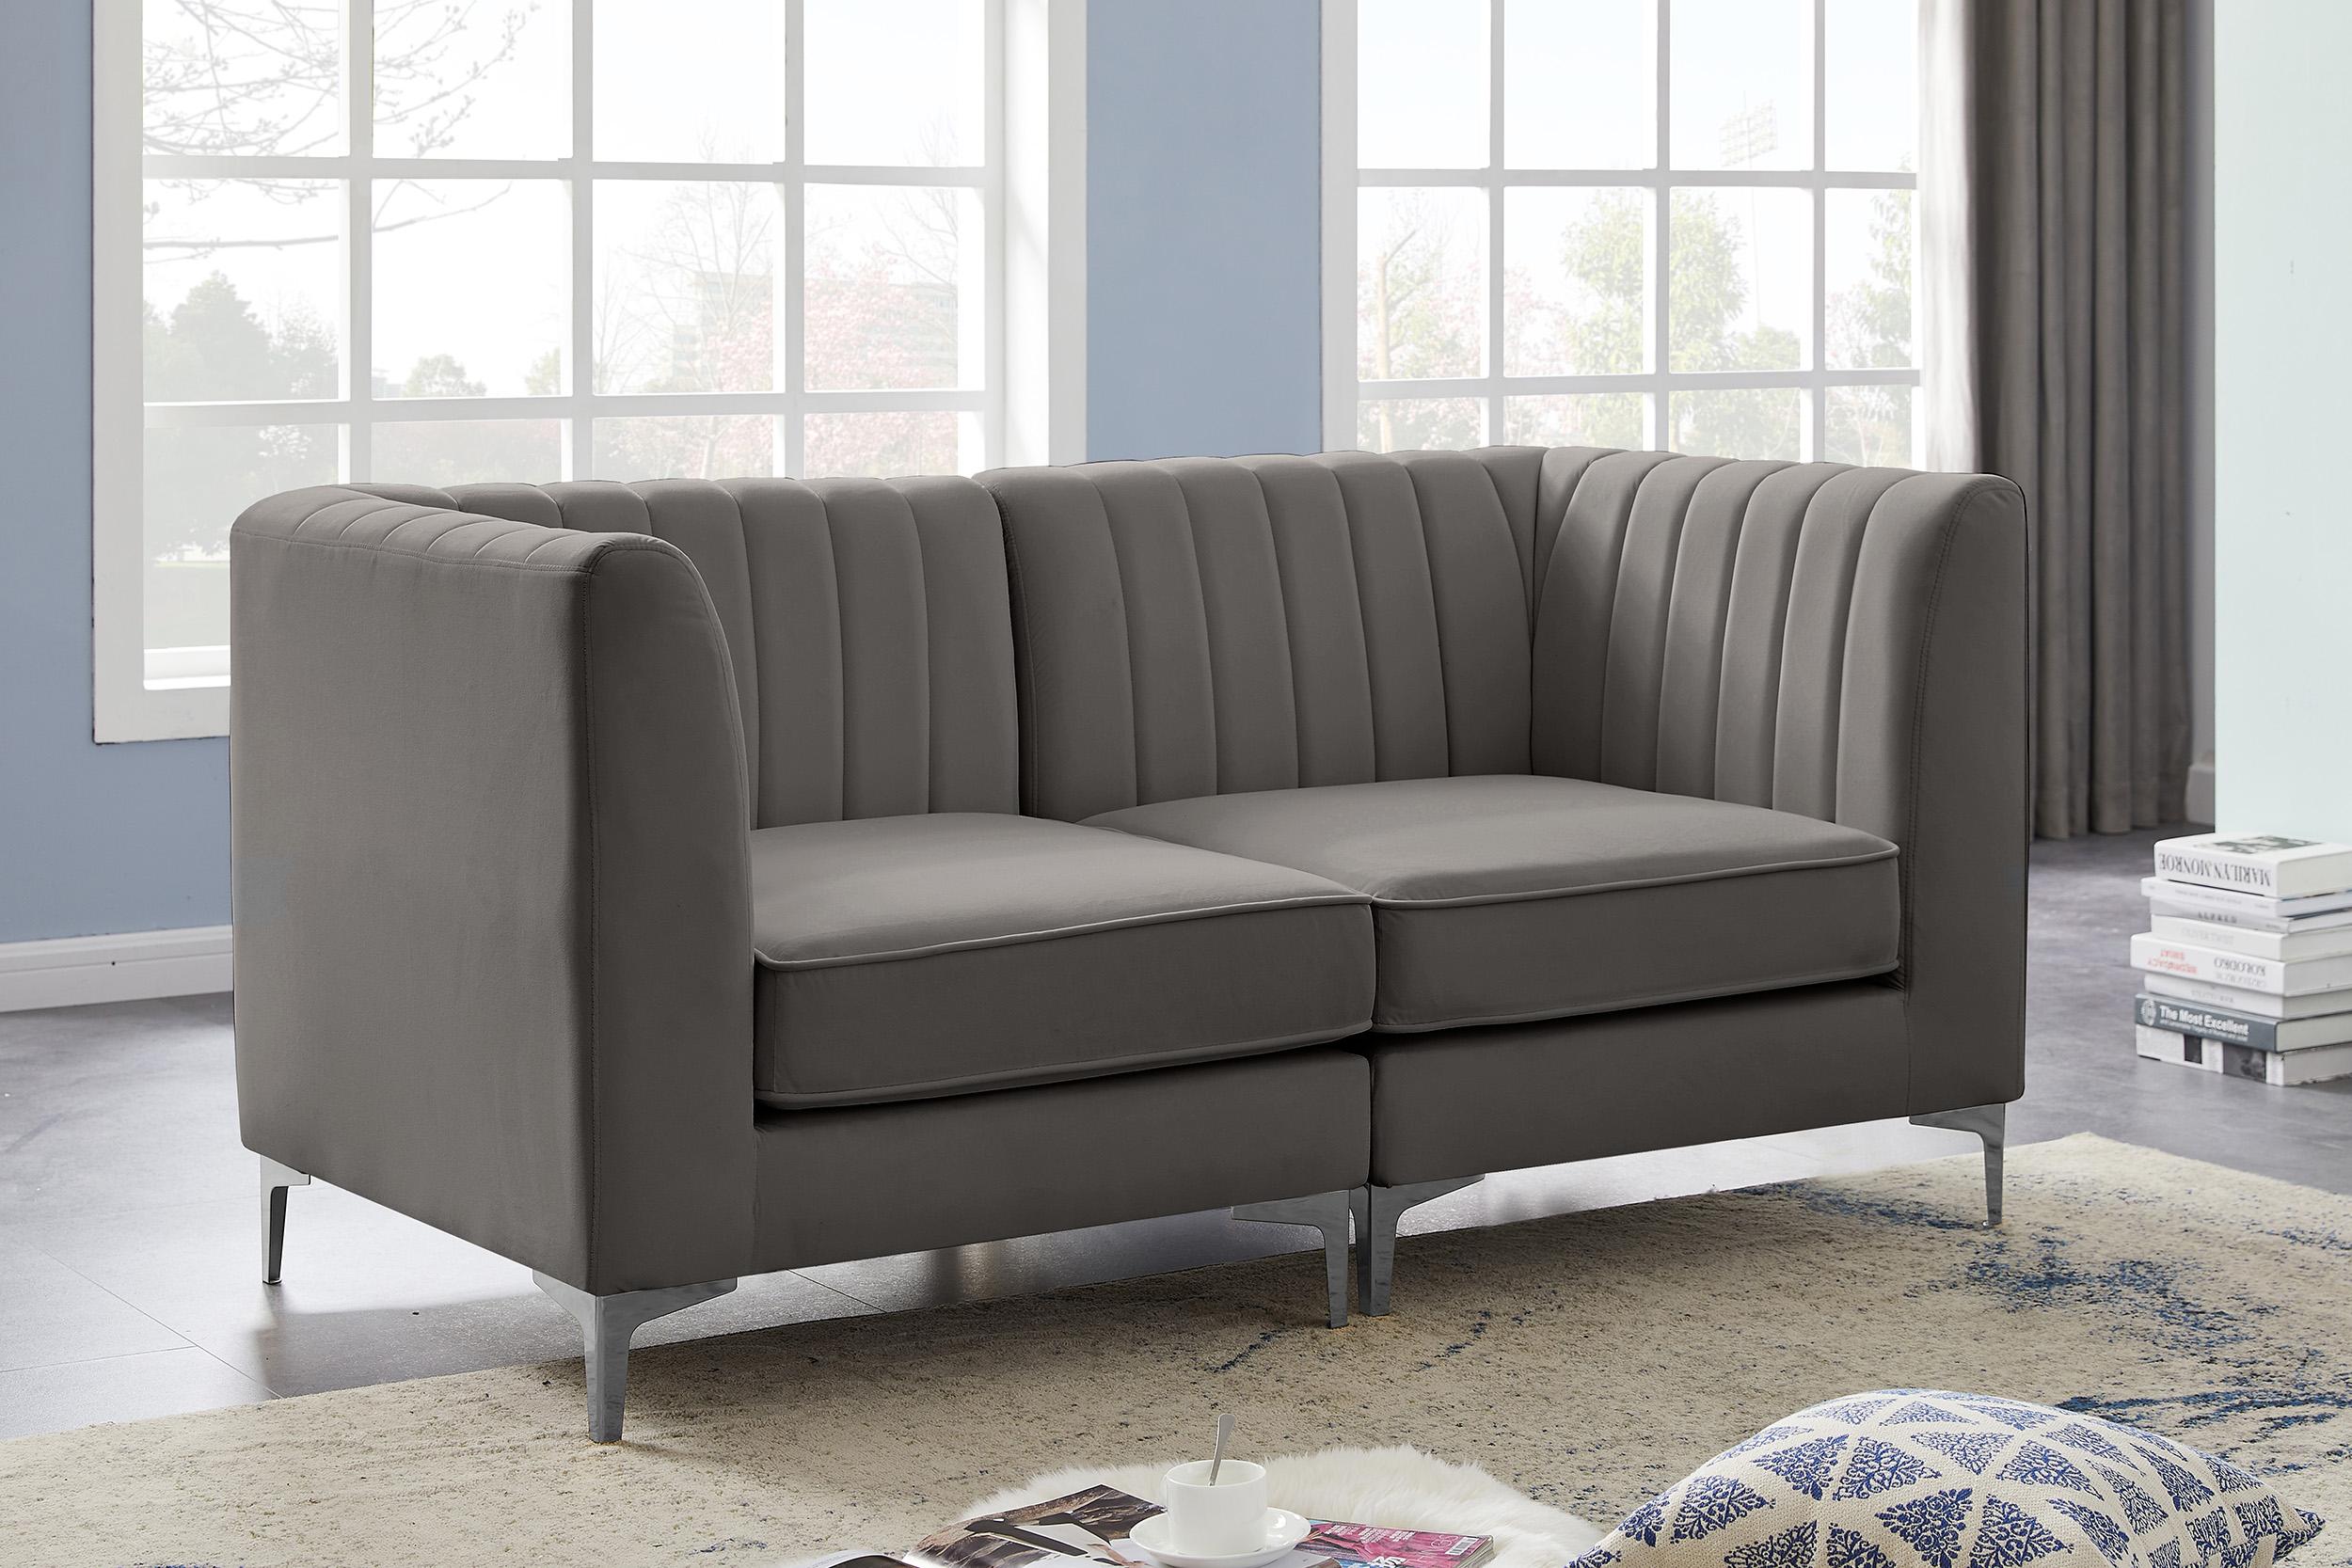 

    
604Grey-S67 Meridian Furniture Modular Sectional Sofa
